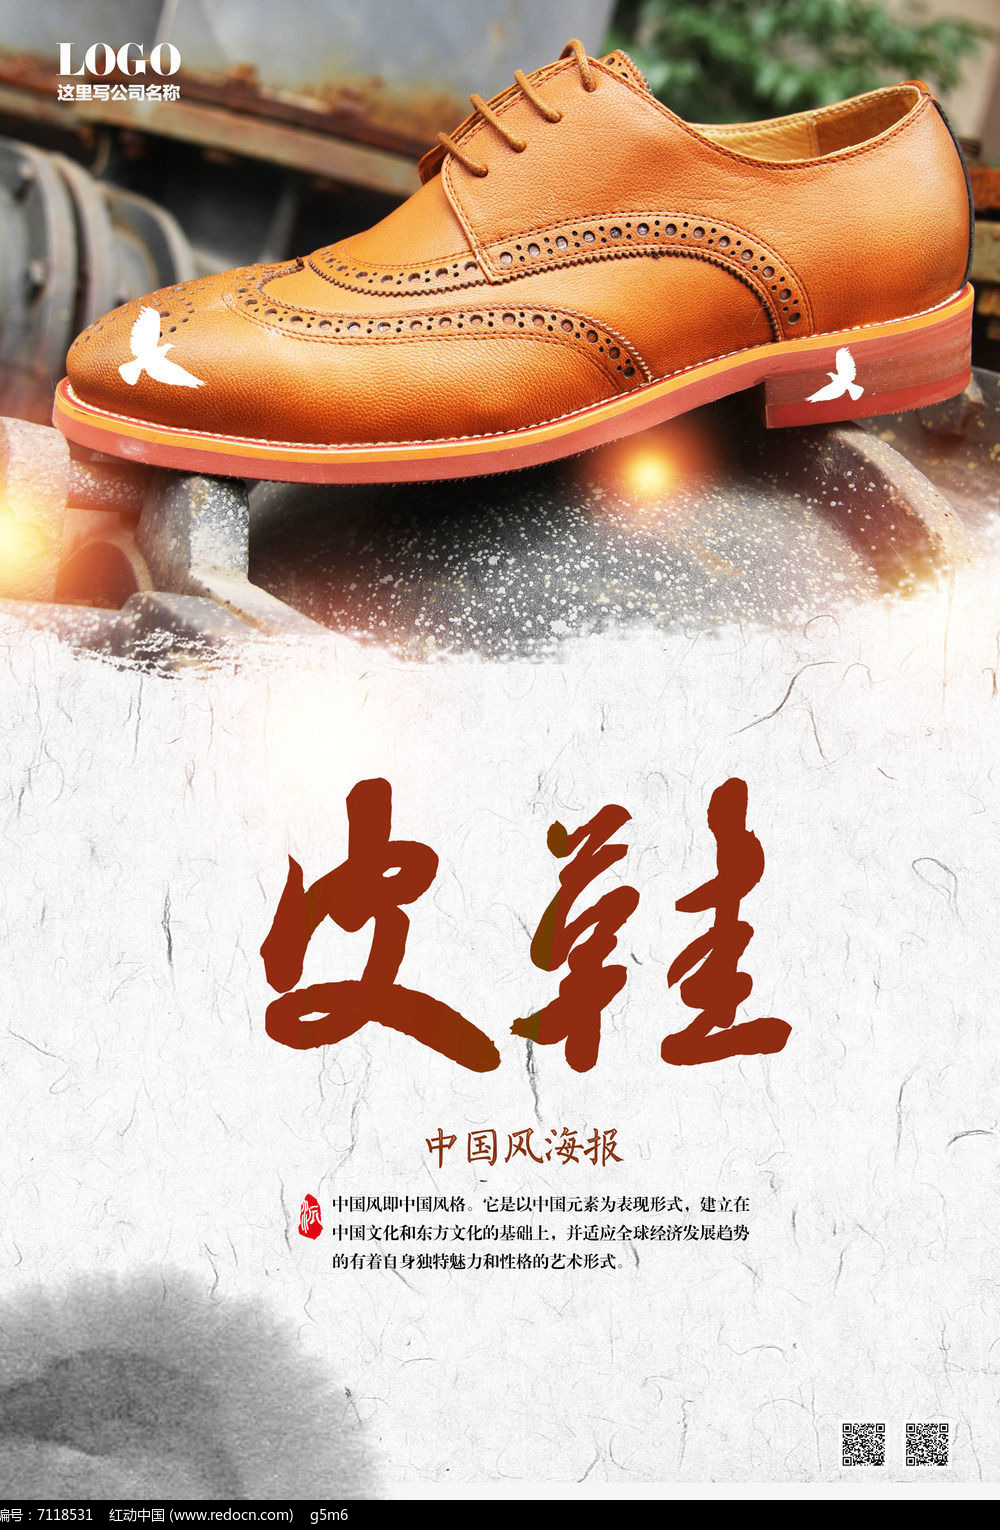 原创设计稿 海报设计/宣传单/广告牌 海报设计 皮鞋海报设计 素材描述